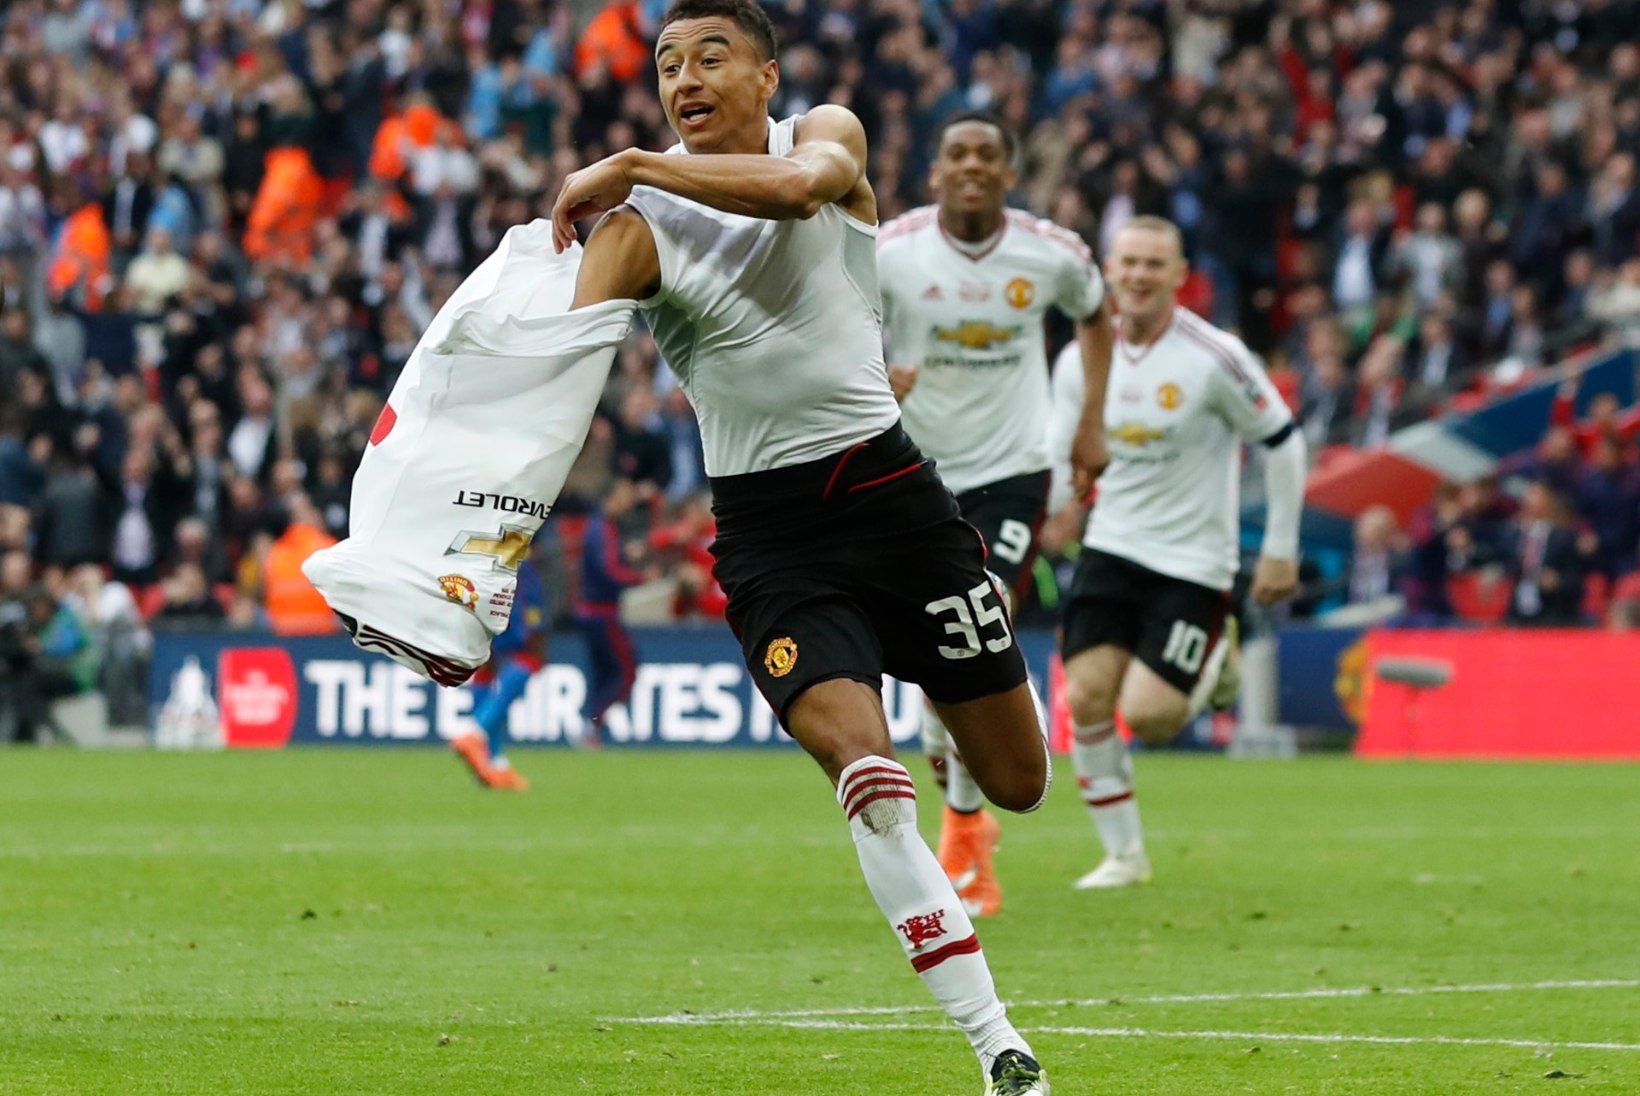 FOTOD | Manchesteri võidupidu: Van Gaal sai lõpuks tiitli